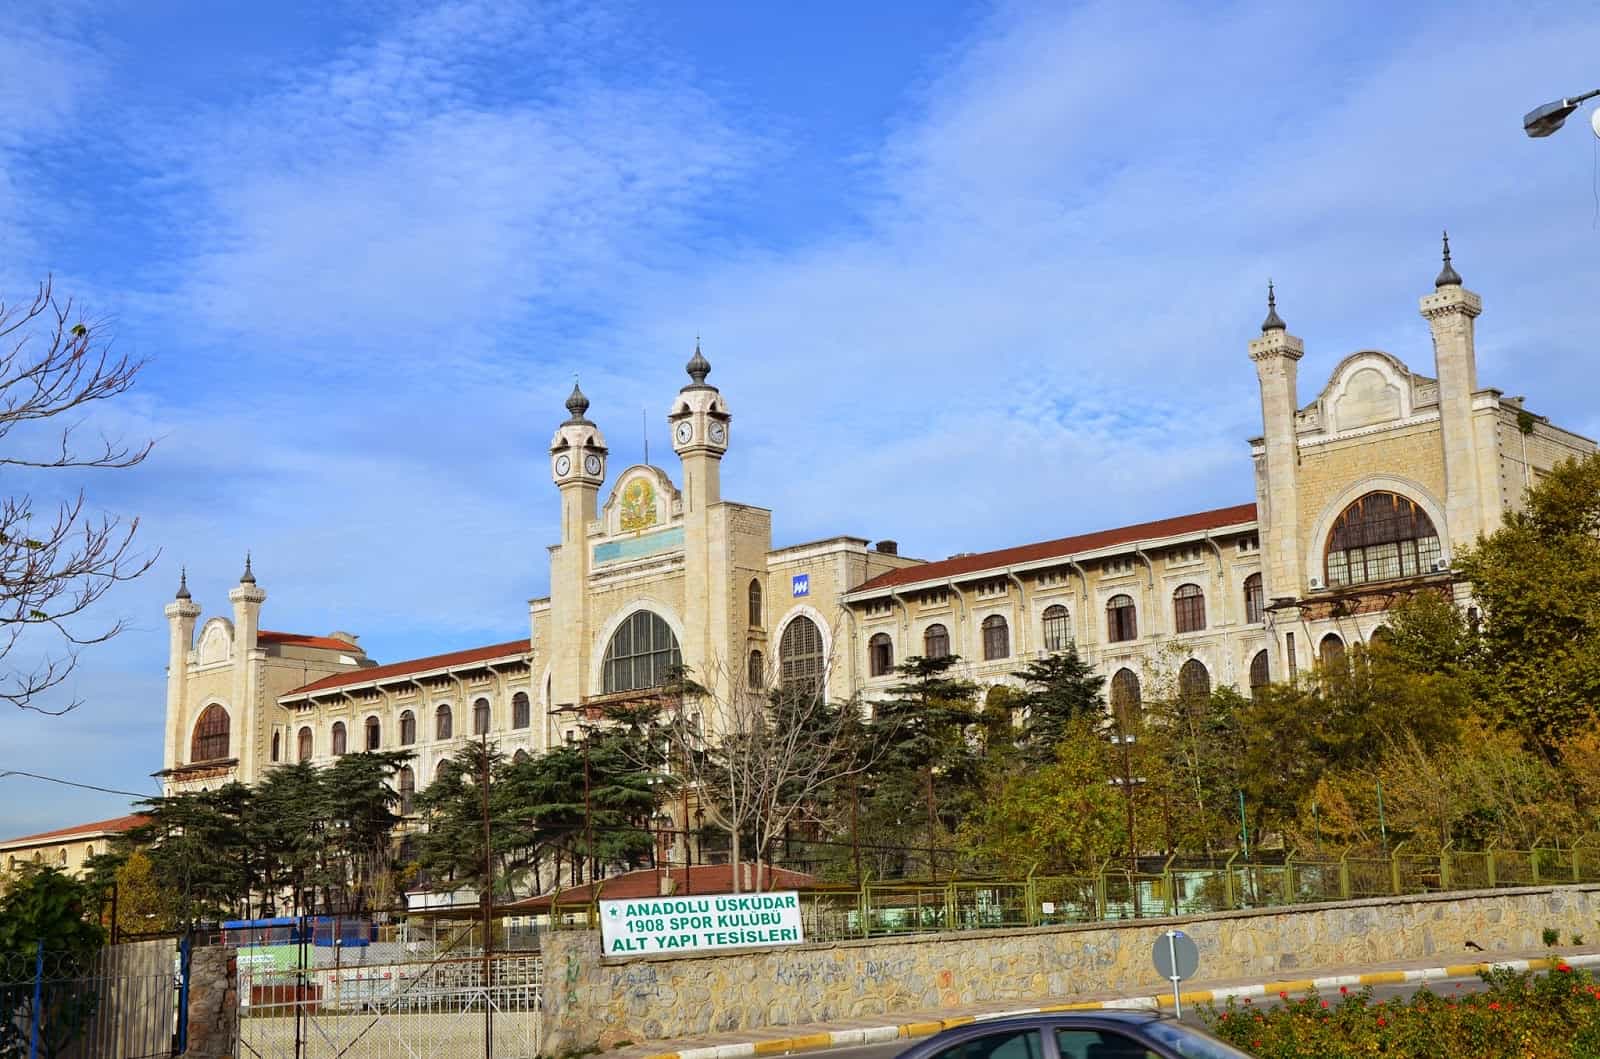 Marmara University in Selimiye, Üsküdar, Istanbul, Turkey